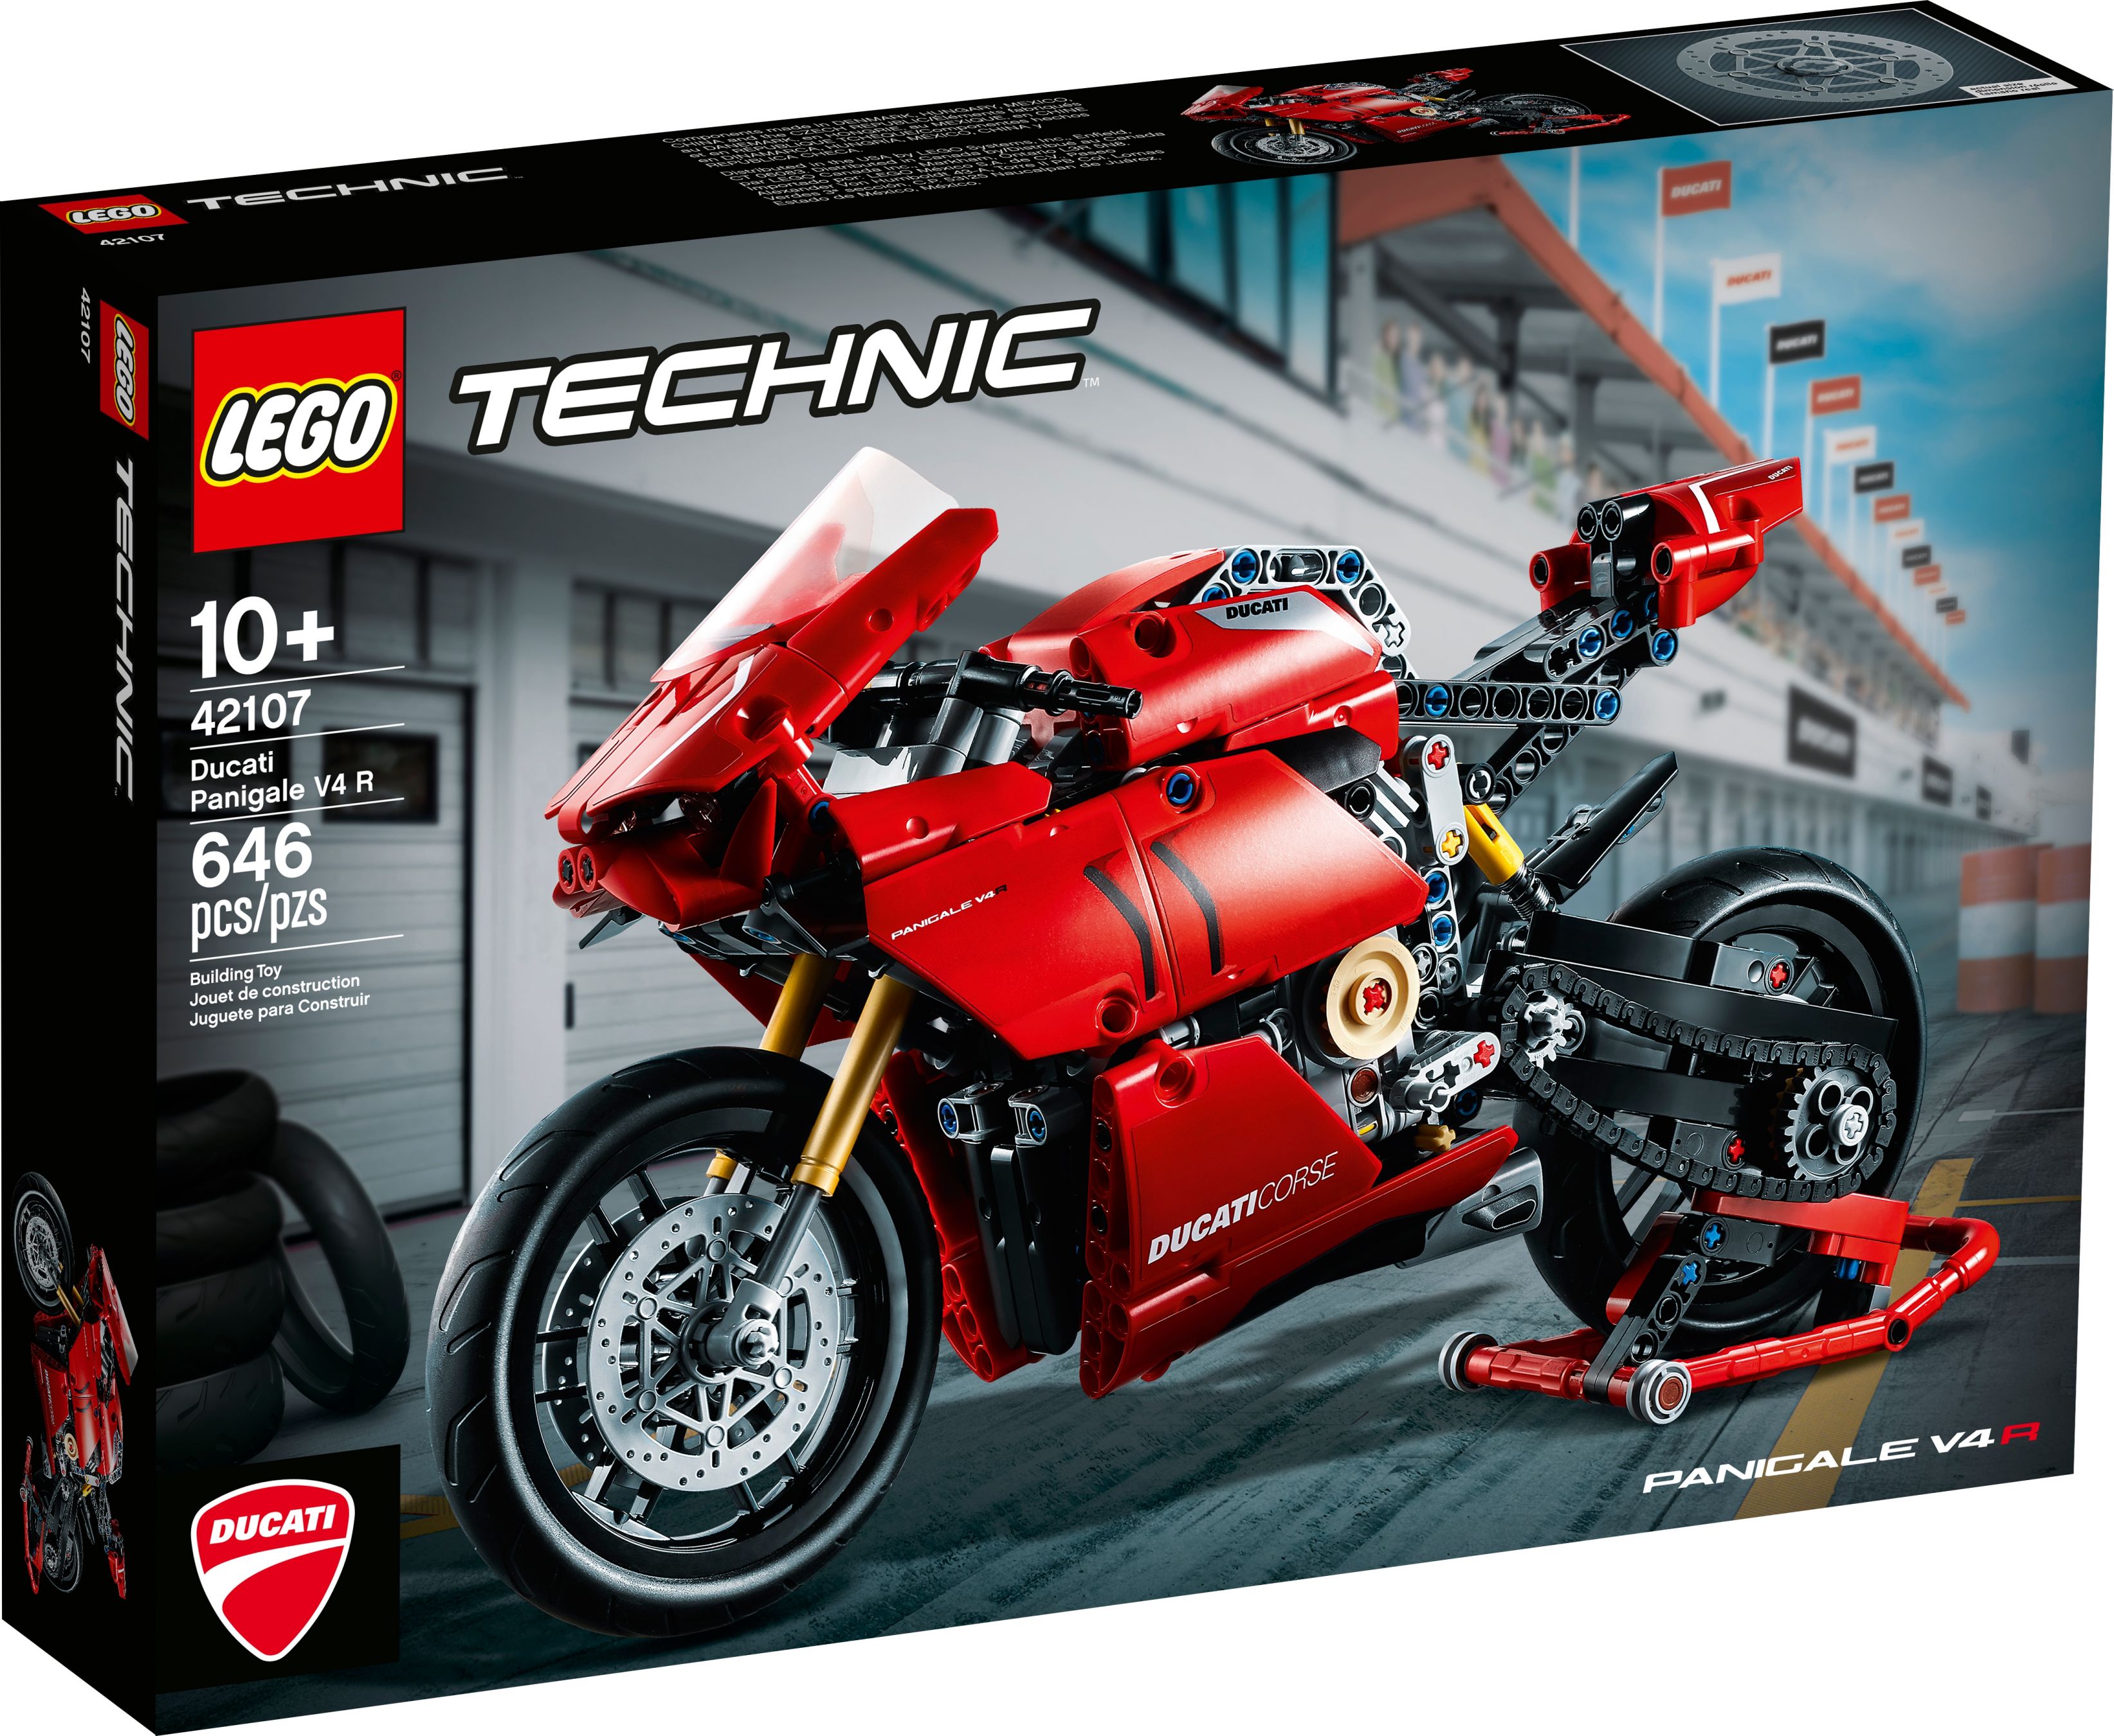 LEGO Technic 42107 Ducati Panigale V4 R LEGO_42107_alt11.jpg